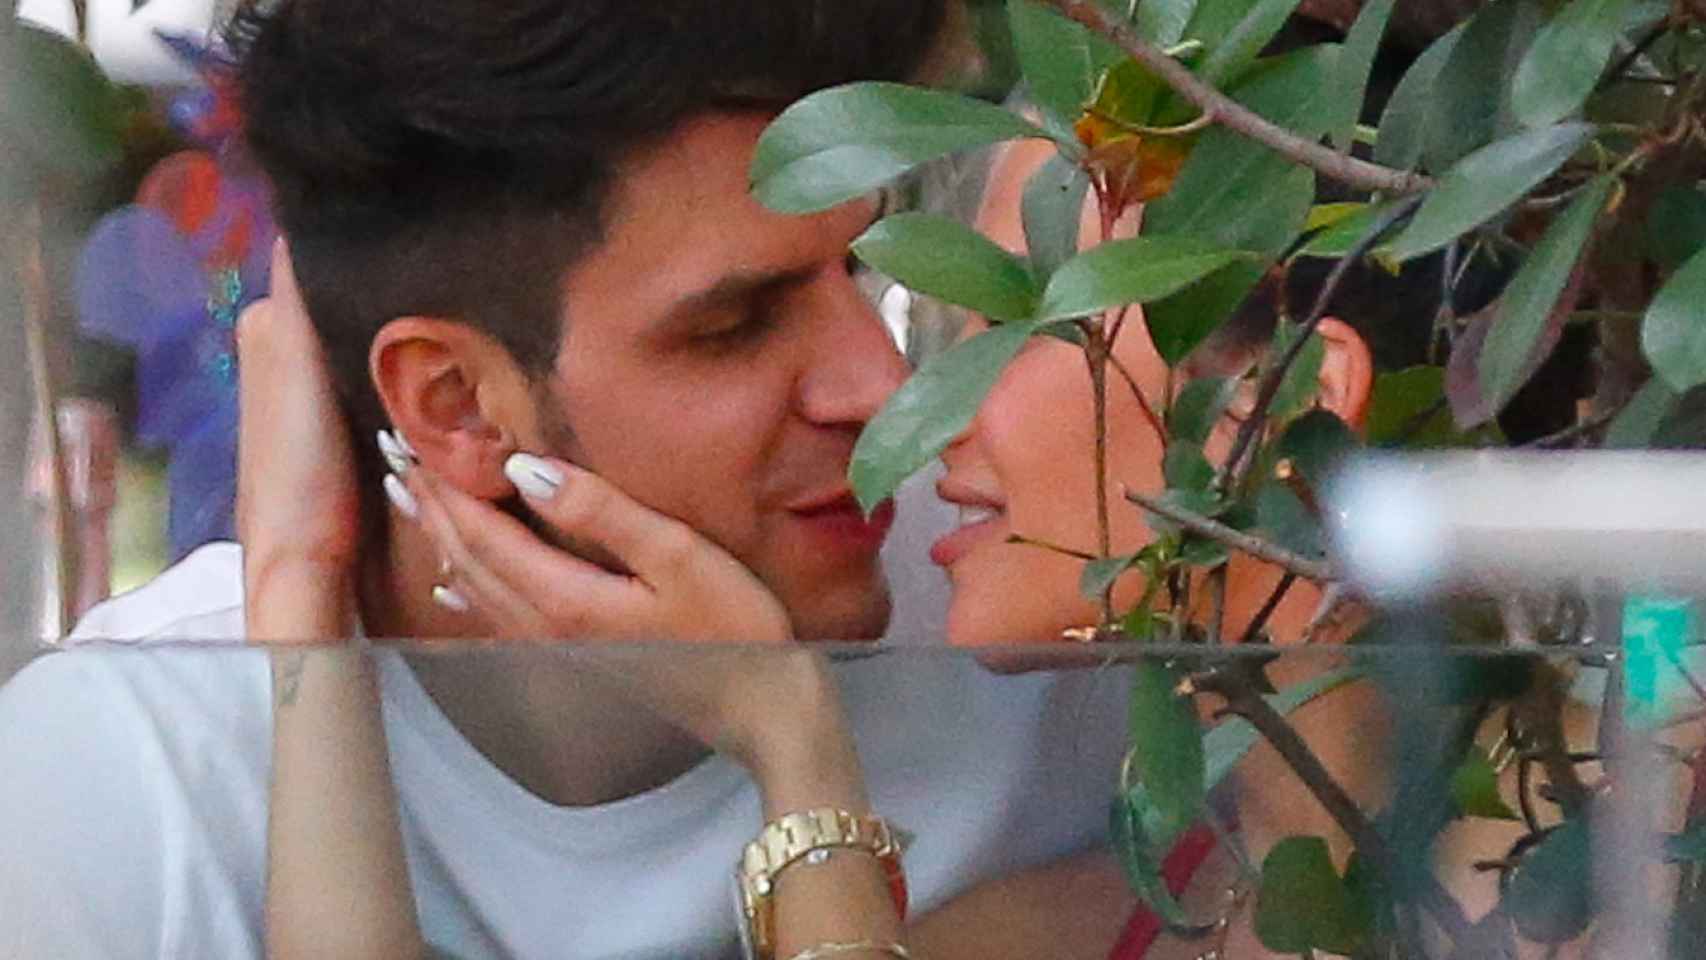 Diego Matamoros y Carla Barber se besan en una terraza de Madrid / AGENCIAS